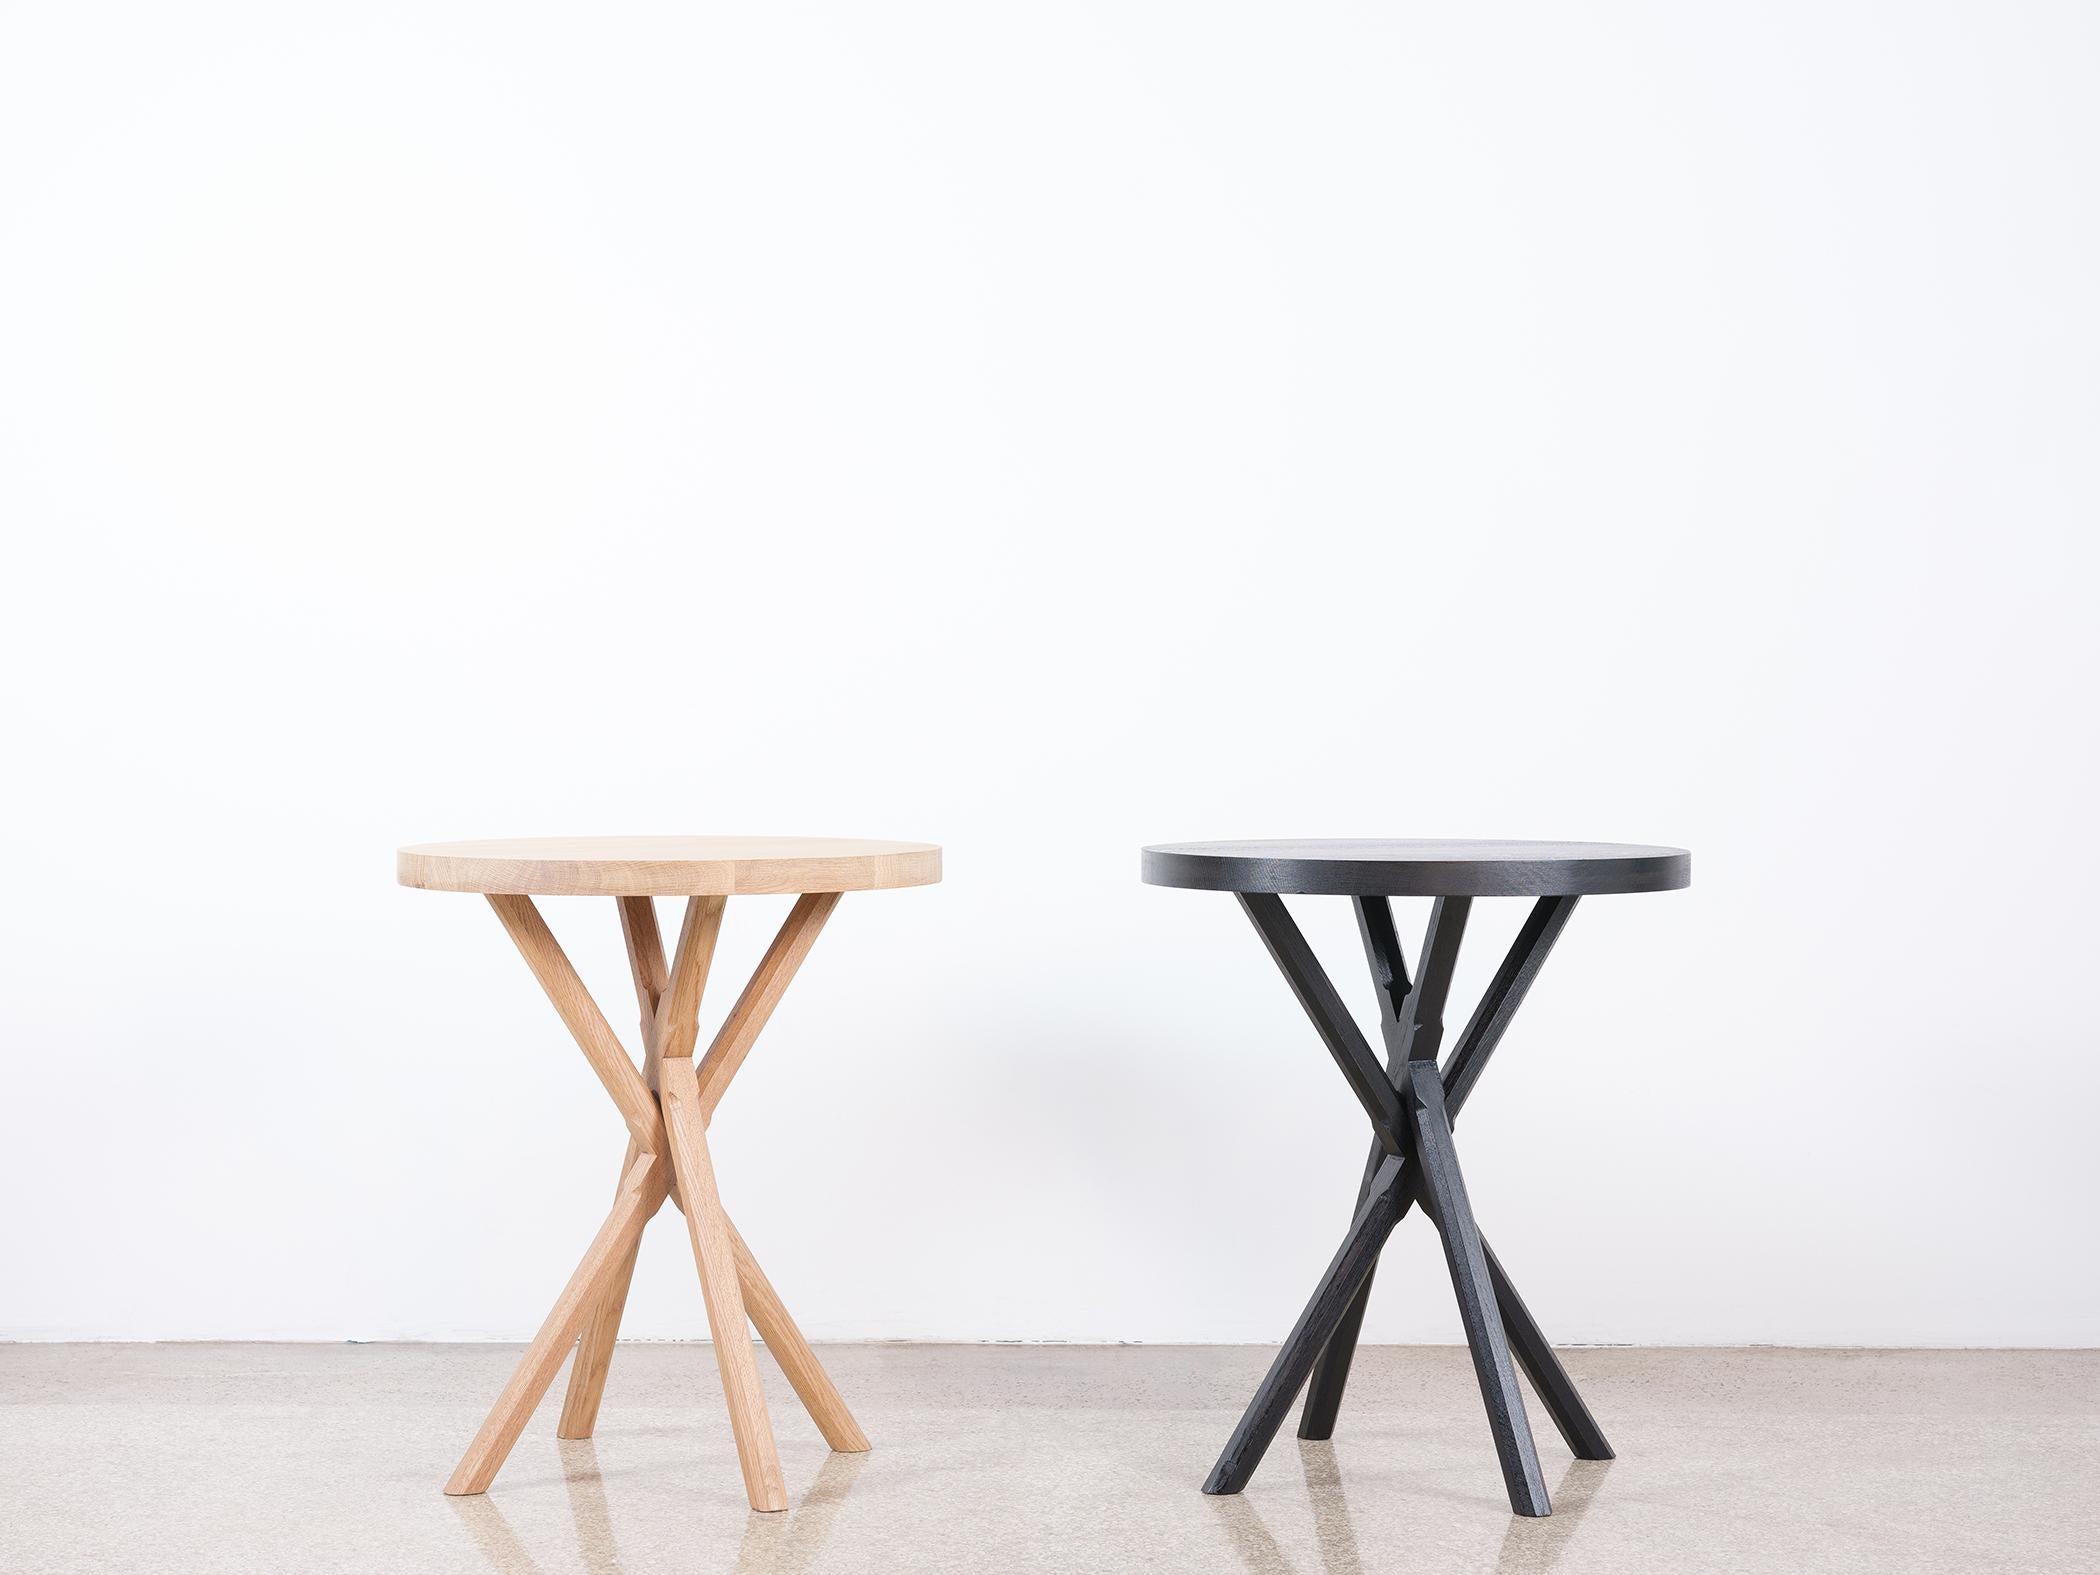 Cette table d'appoint moderne à base de x est fabriquée à la main aux États-Unis et se compose entièrement de bois dur. Caractérisé par un épais plateau en bois massif,  et des pieds polygonaux sculptés, la table d'appoint moderne Bond se distingue